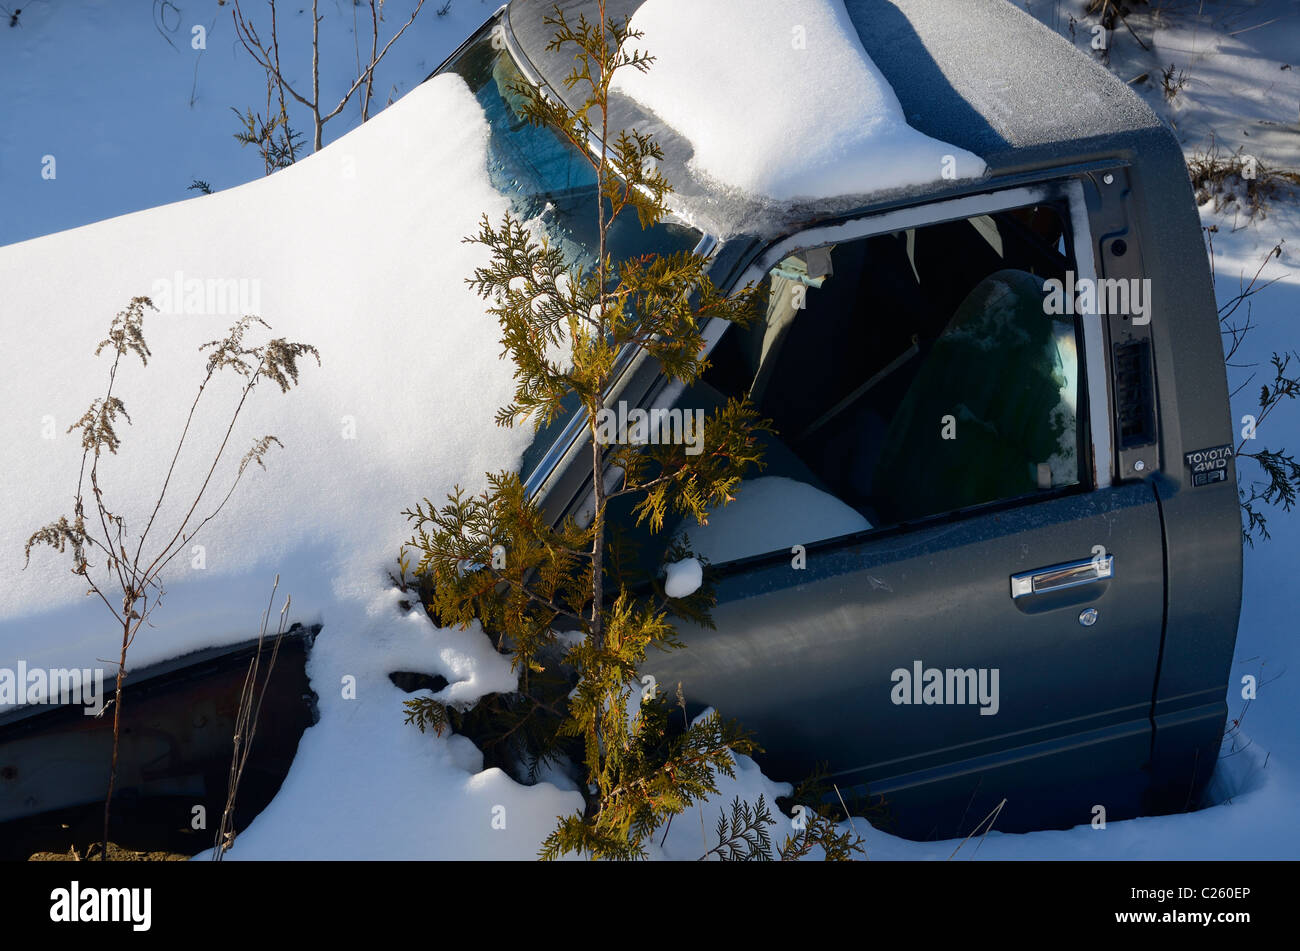 La nieve fresca cubriendo un automóvil abandonado cortados a la mitad de la cabina en una helada mañana de invierno Foto de stock